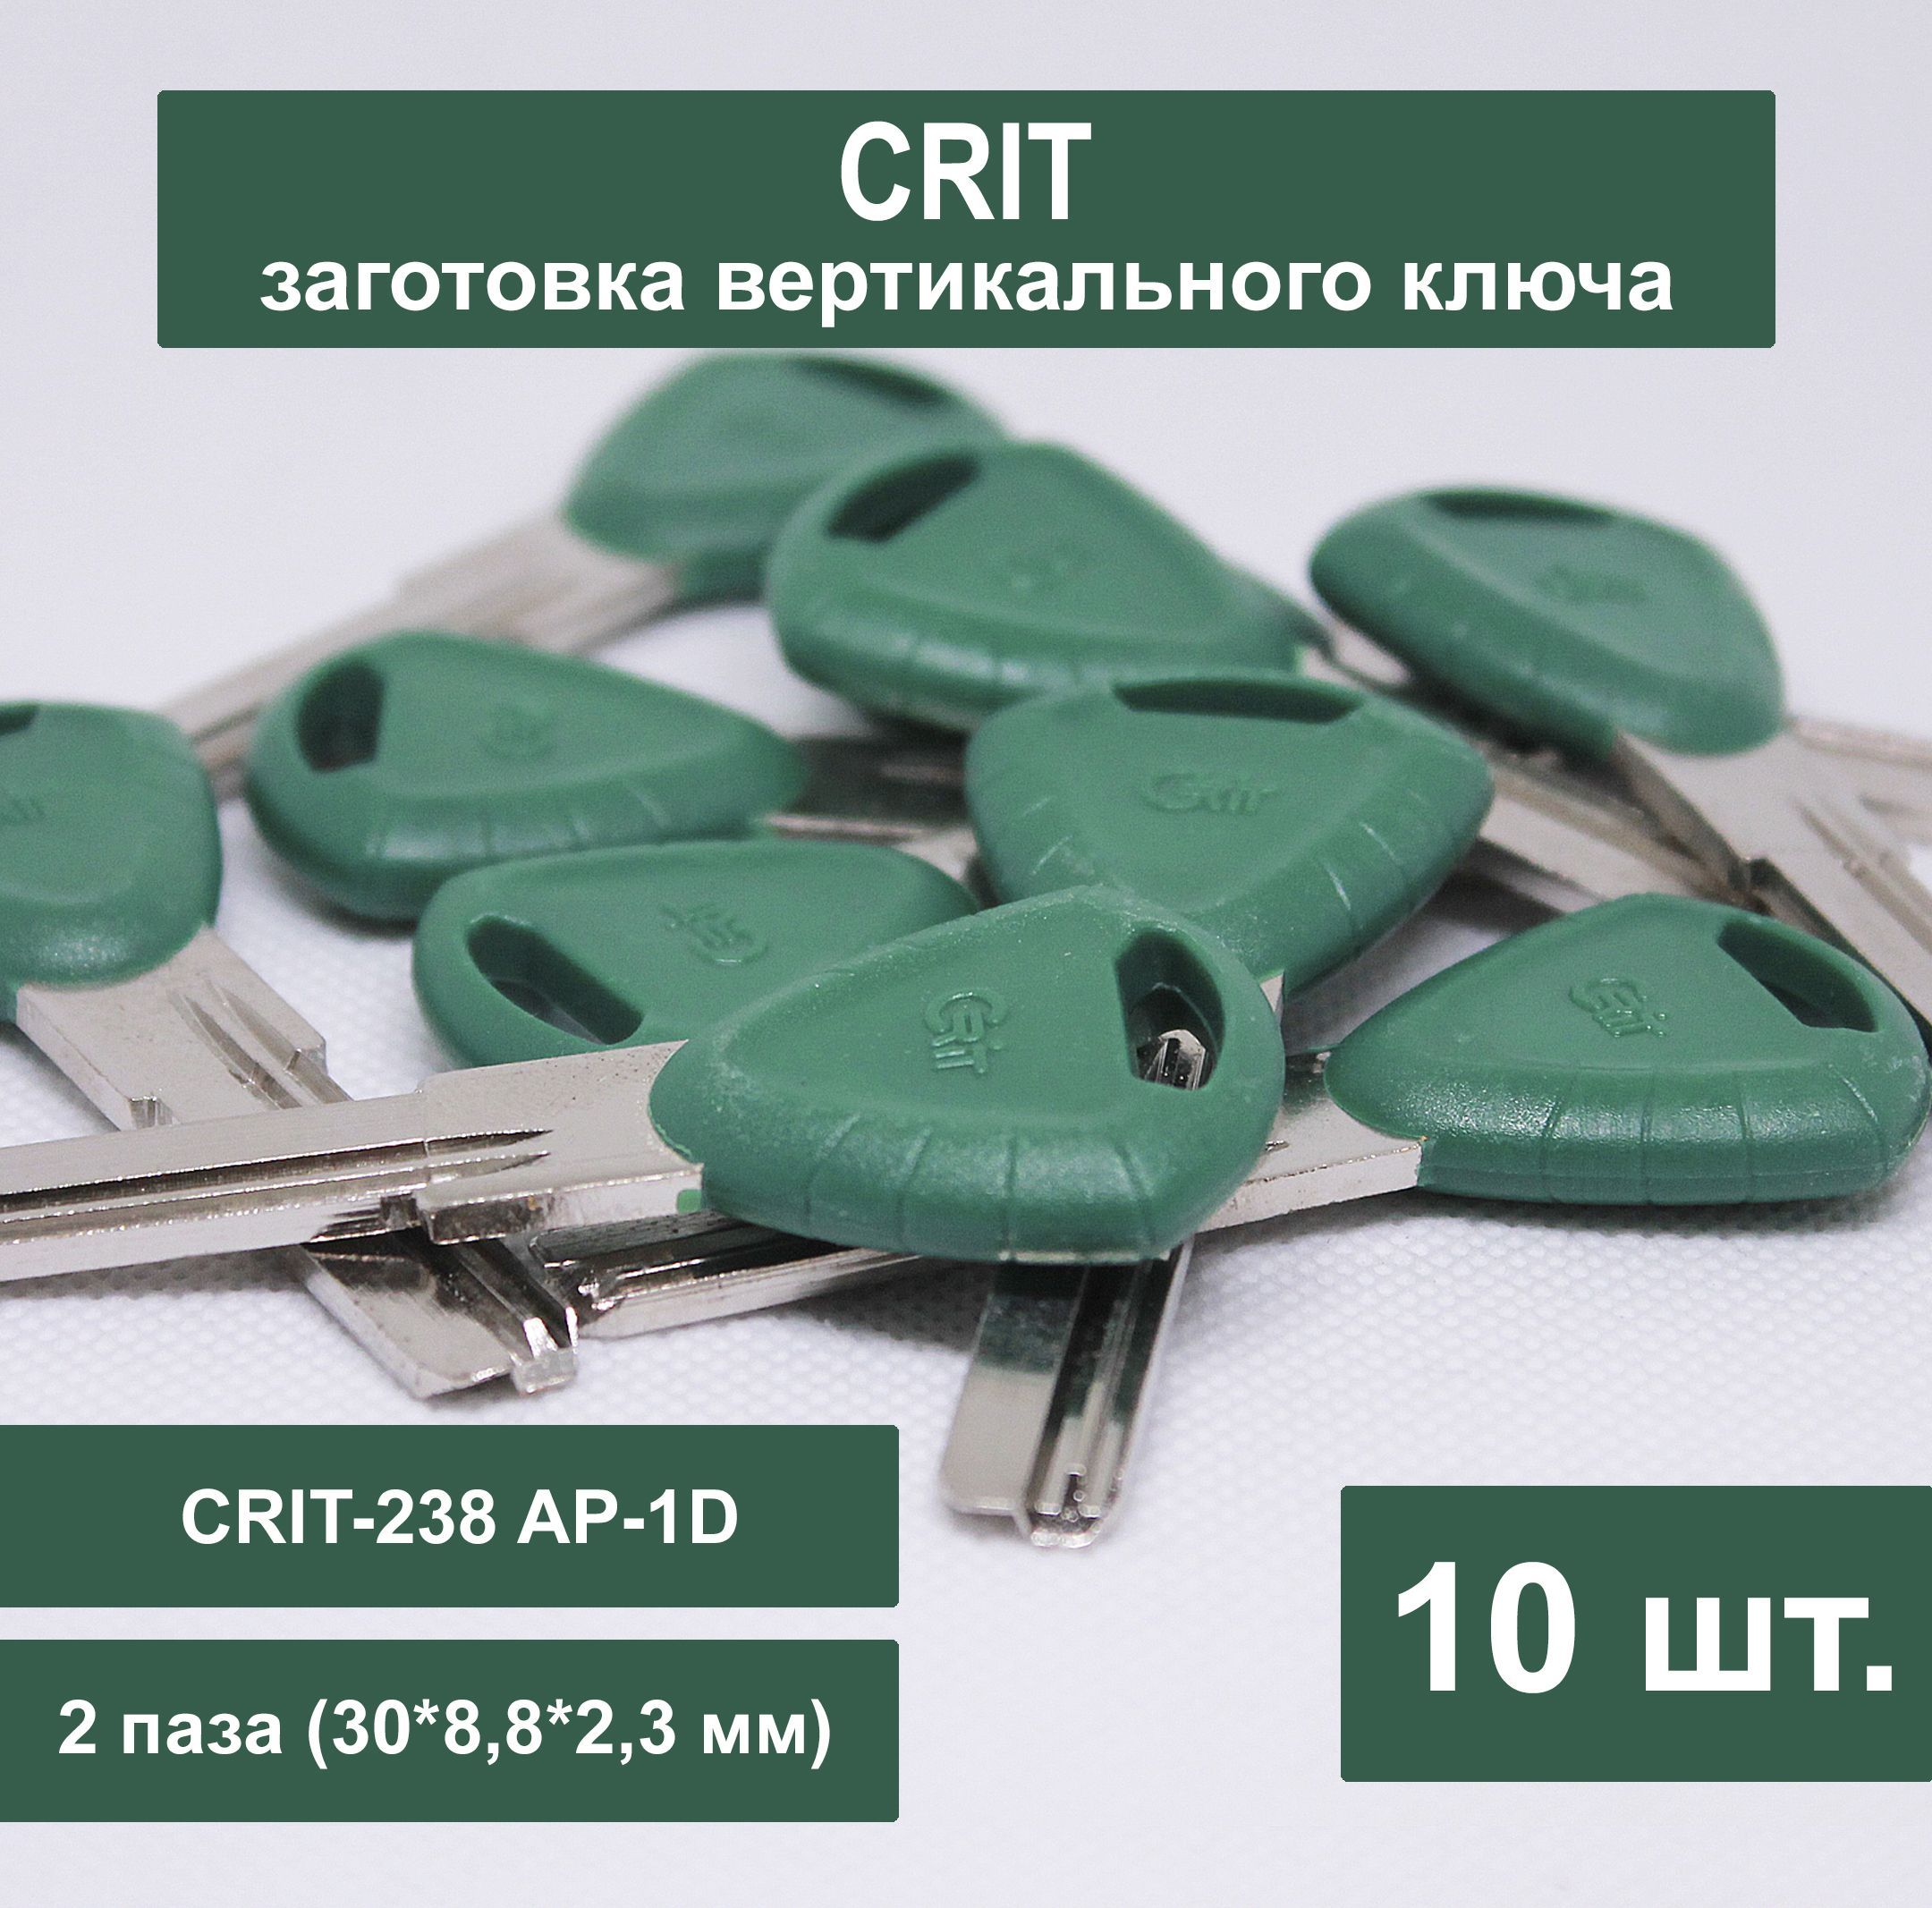 Заготовка ключа CRIT вертикальный (10шт) Доп CRIT-238 AP-1D ...